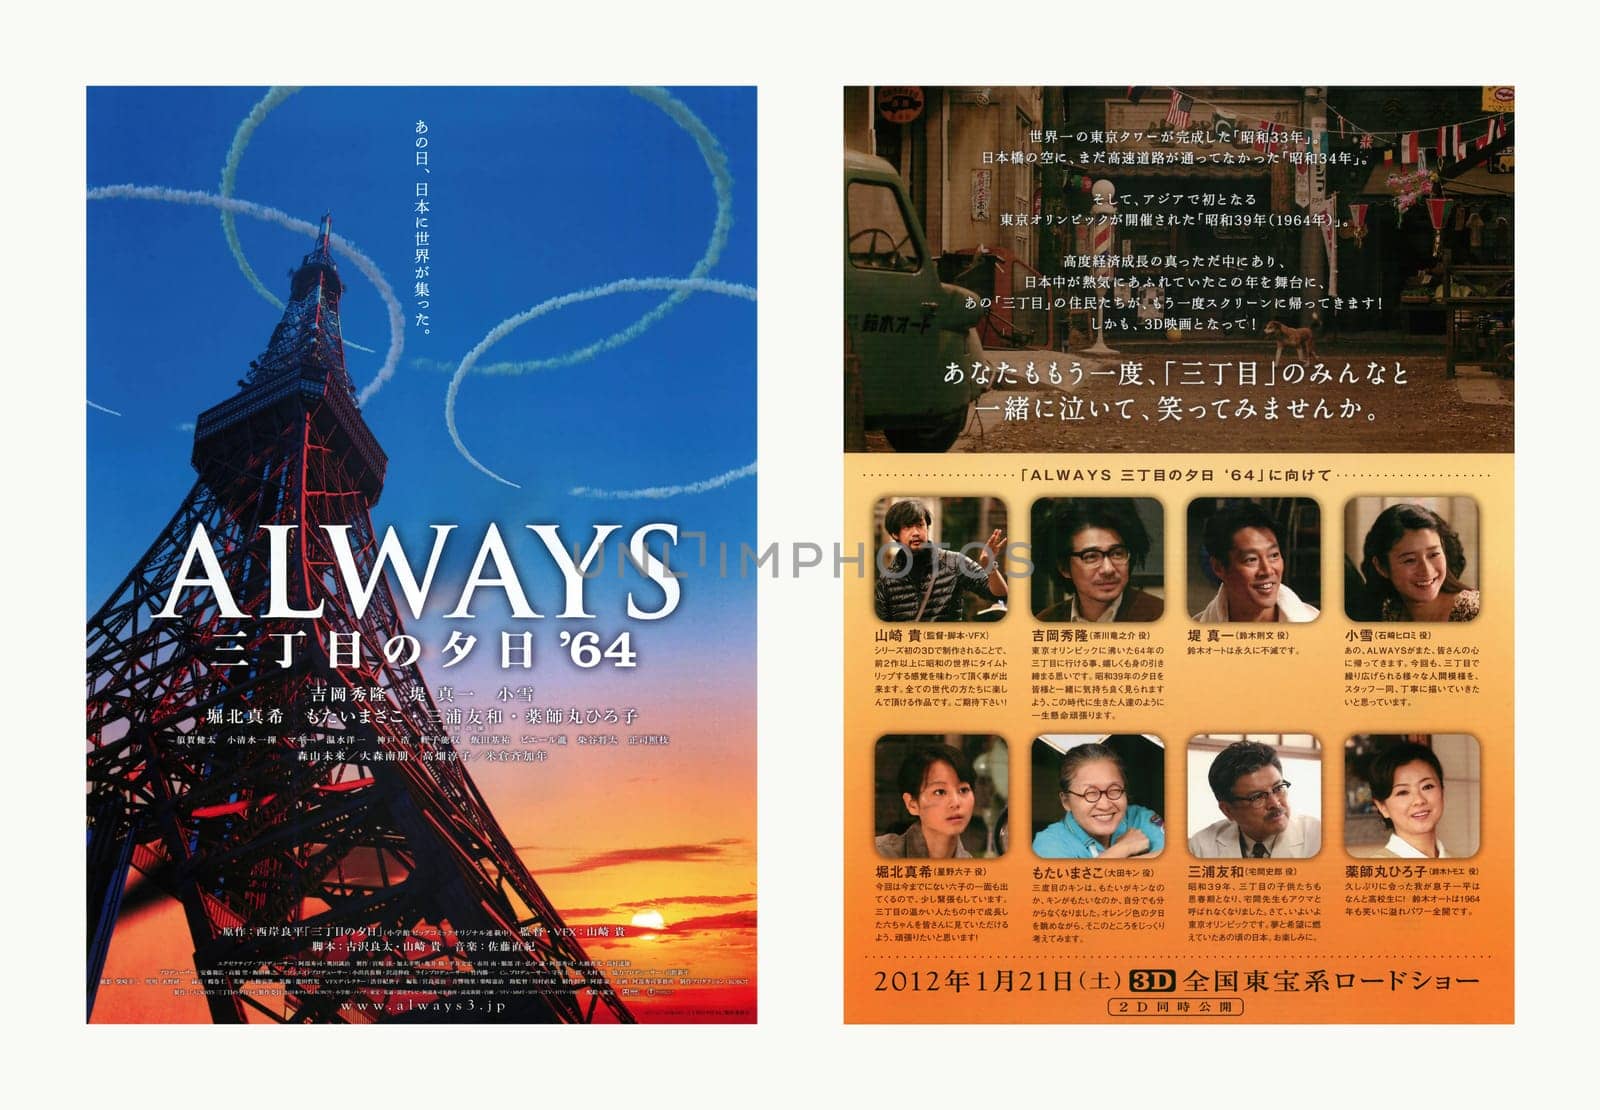 1st teaser visual leaflet of movie "Always: Sunset on Third Street '64" by Japanese Takashi Yamazaki. by kuremo